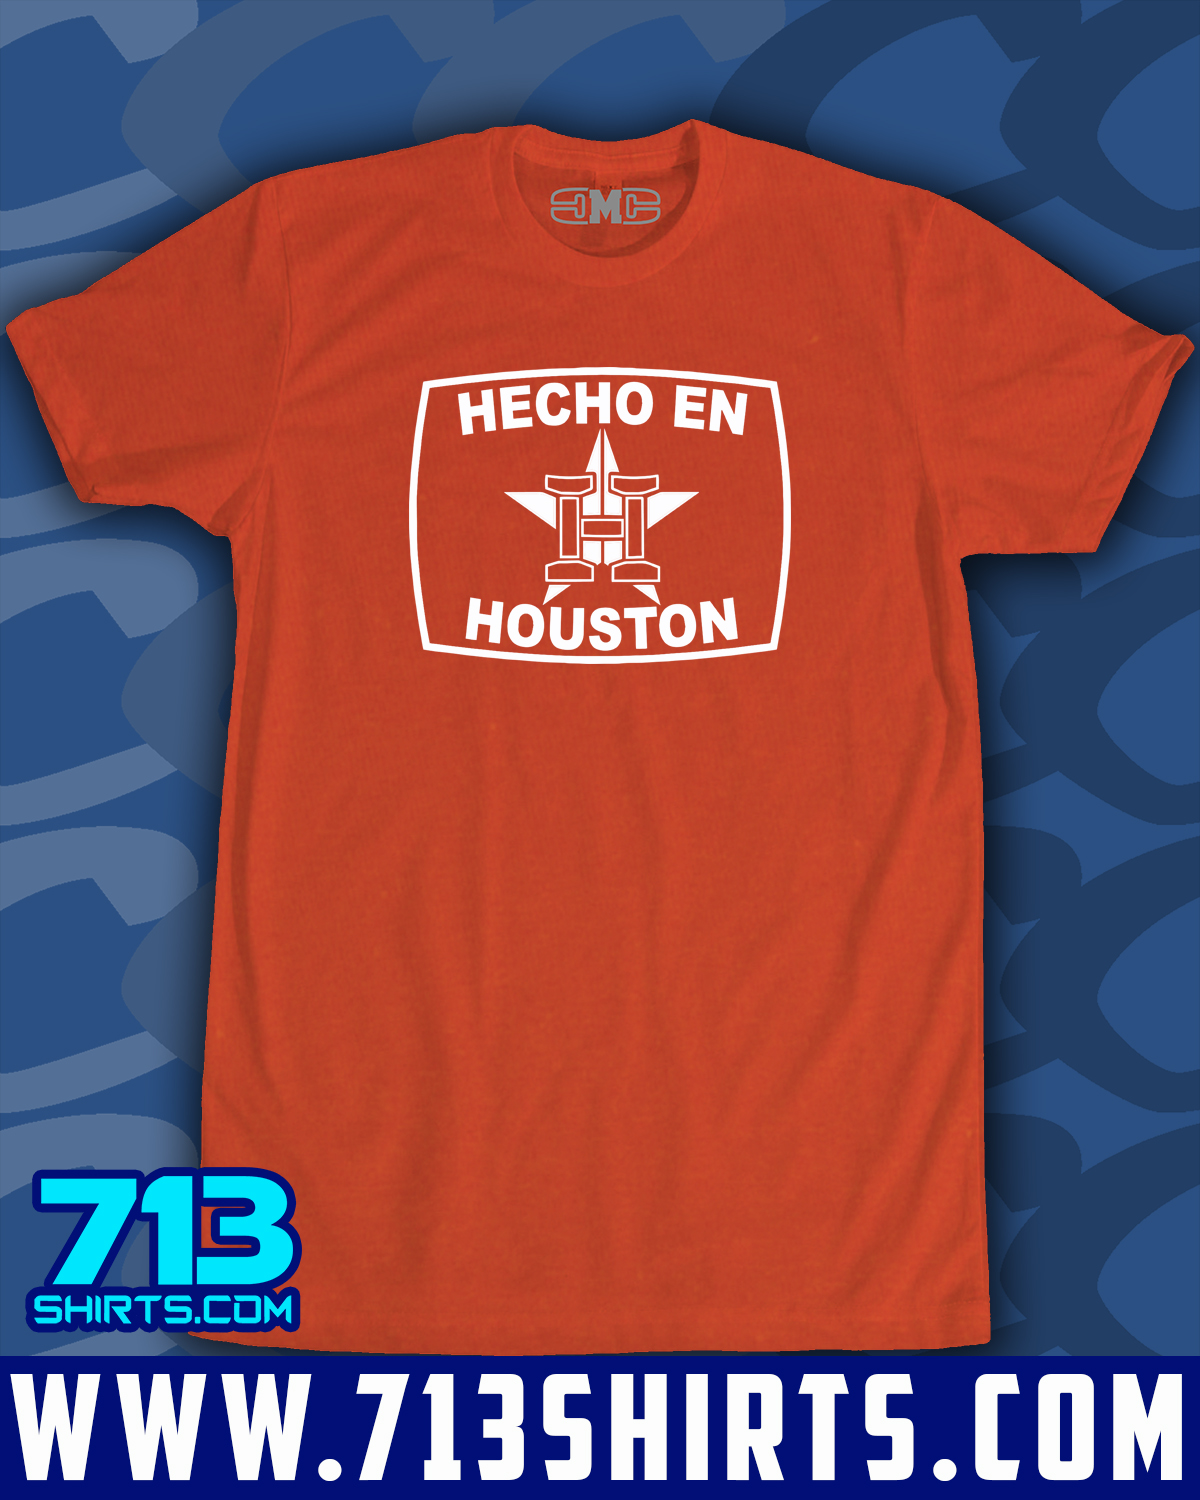 Get It Now Houston Trashtros T-Shirt For Sale 